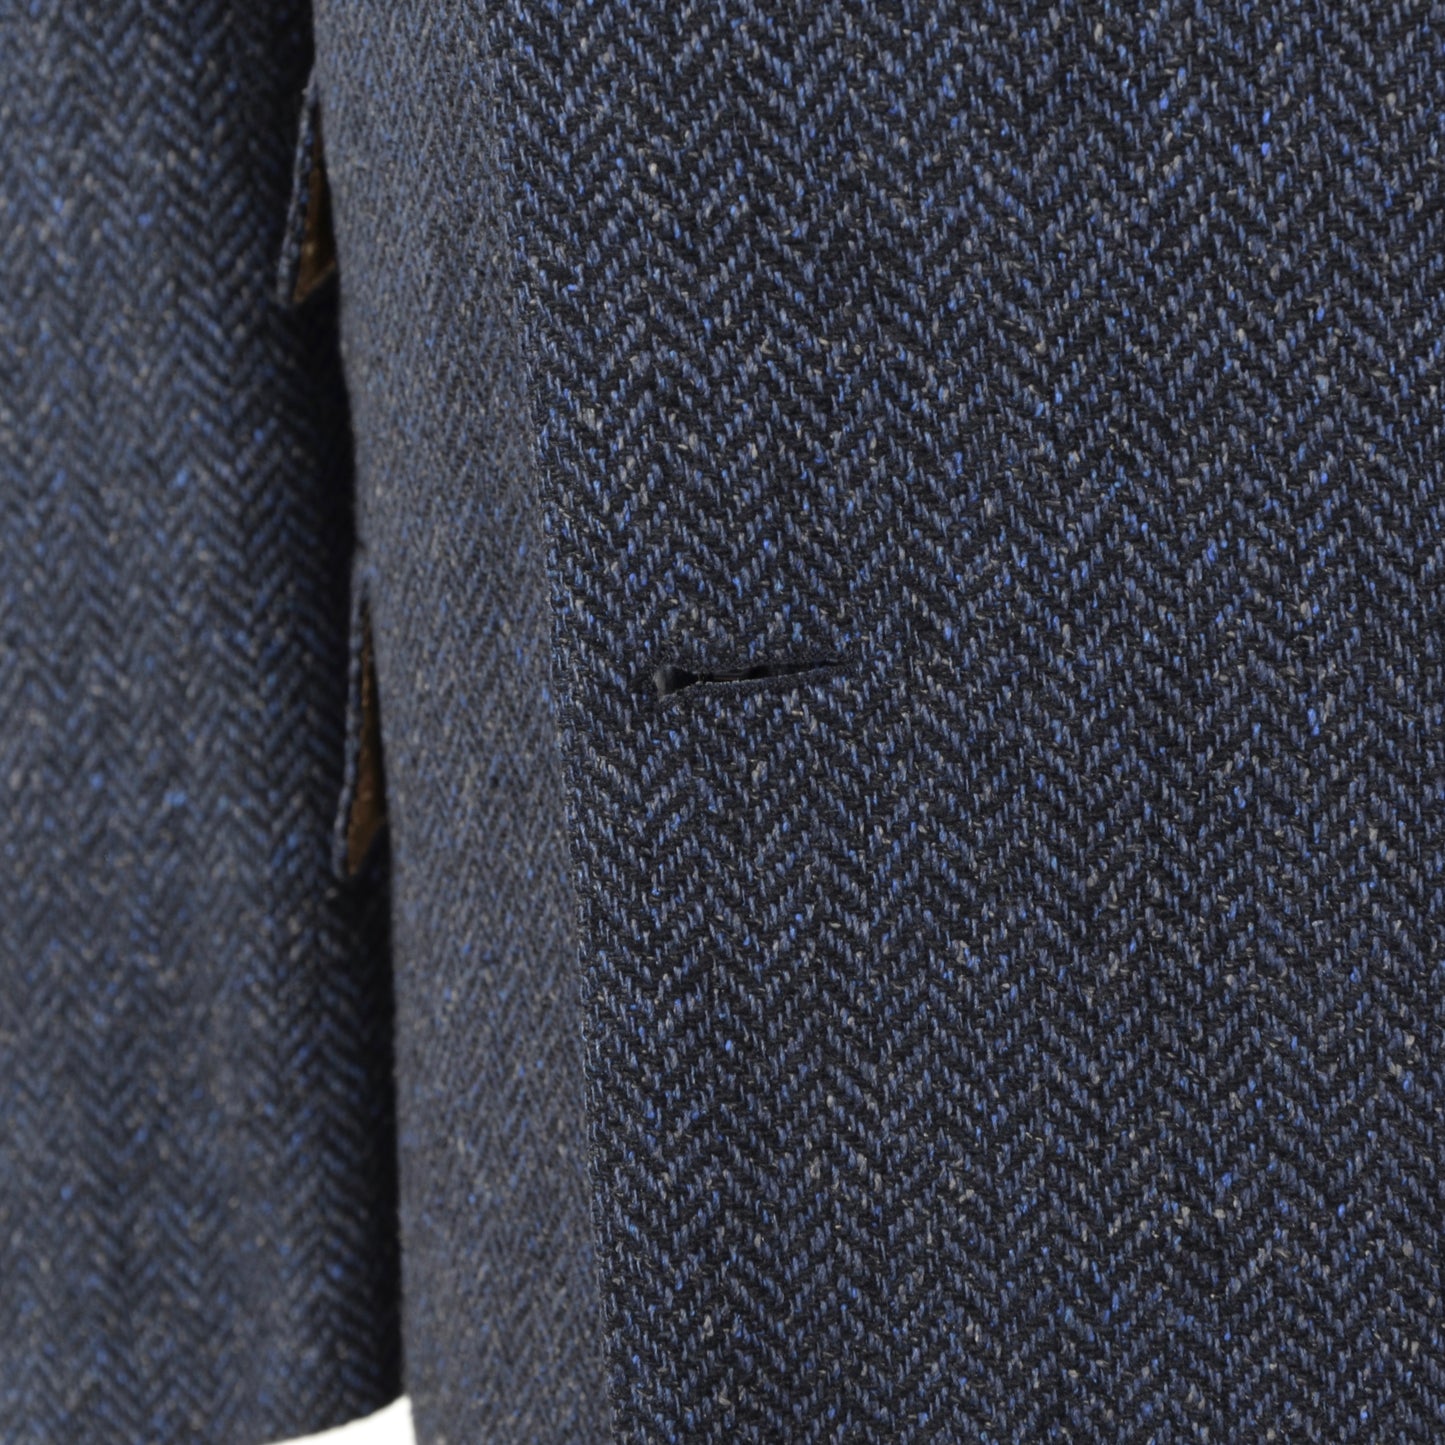 Country Life Seiden-Tweed-Jacke, Größe 54, blaues Fischgrätenmuster